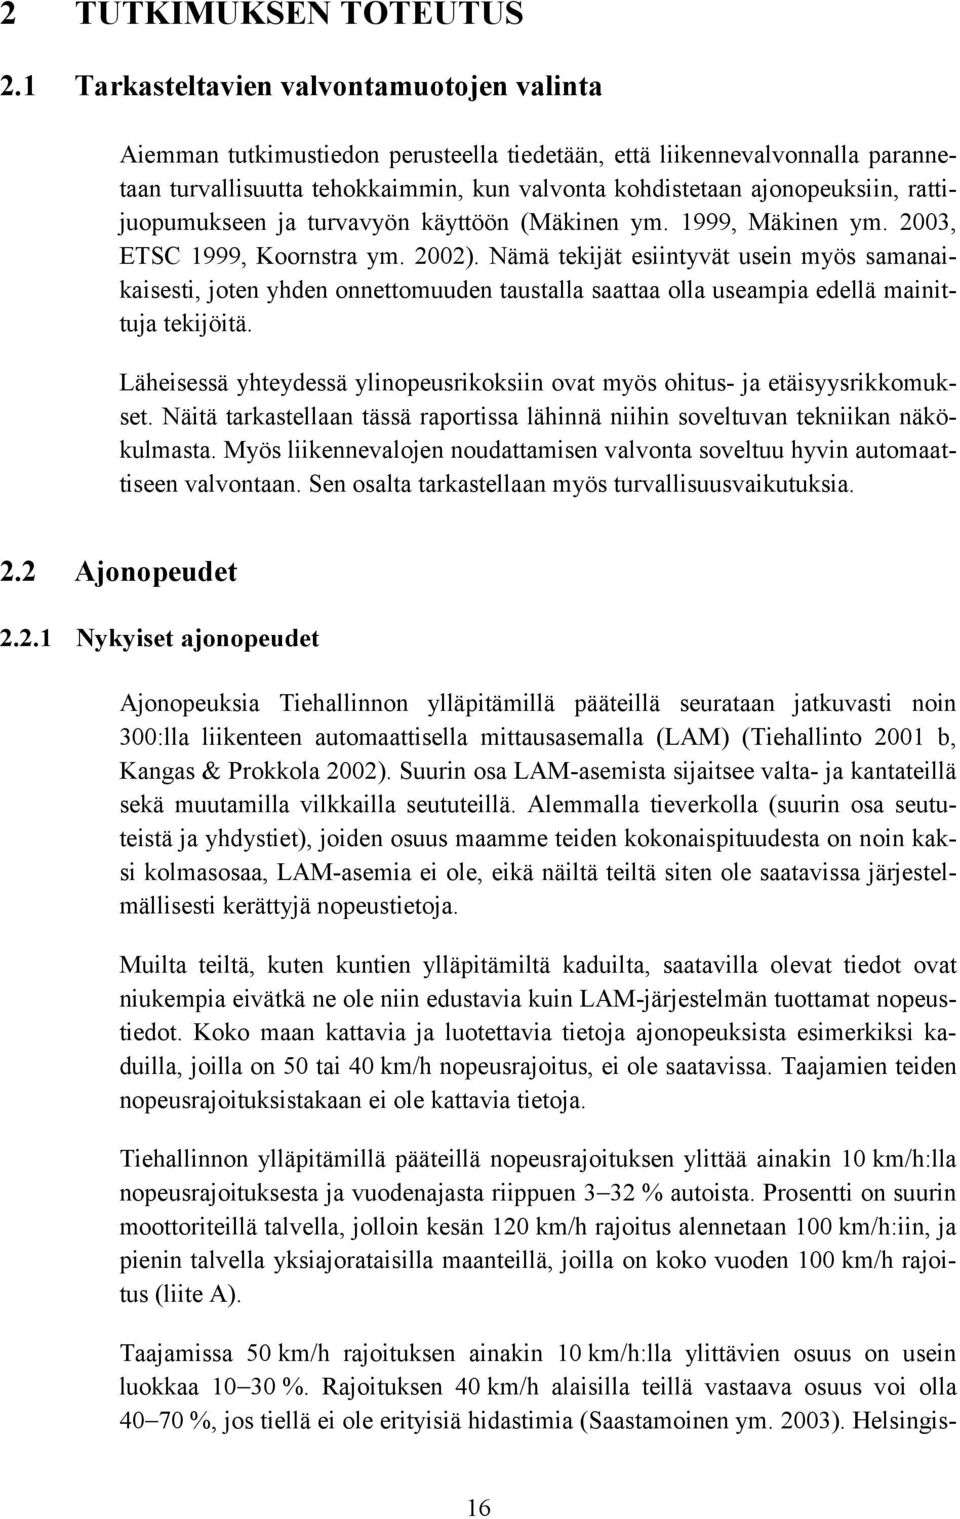 rattijuopumukseen ja turvavyön käyttöön (Mäkinen ym. 1999, Mäkinen ym. 2003, ETSC 1999, Koornstra ym. 2002).